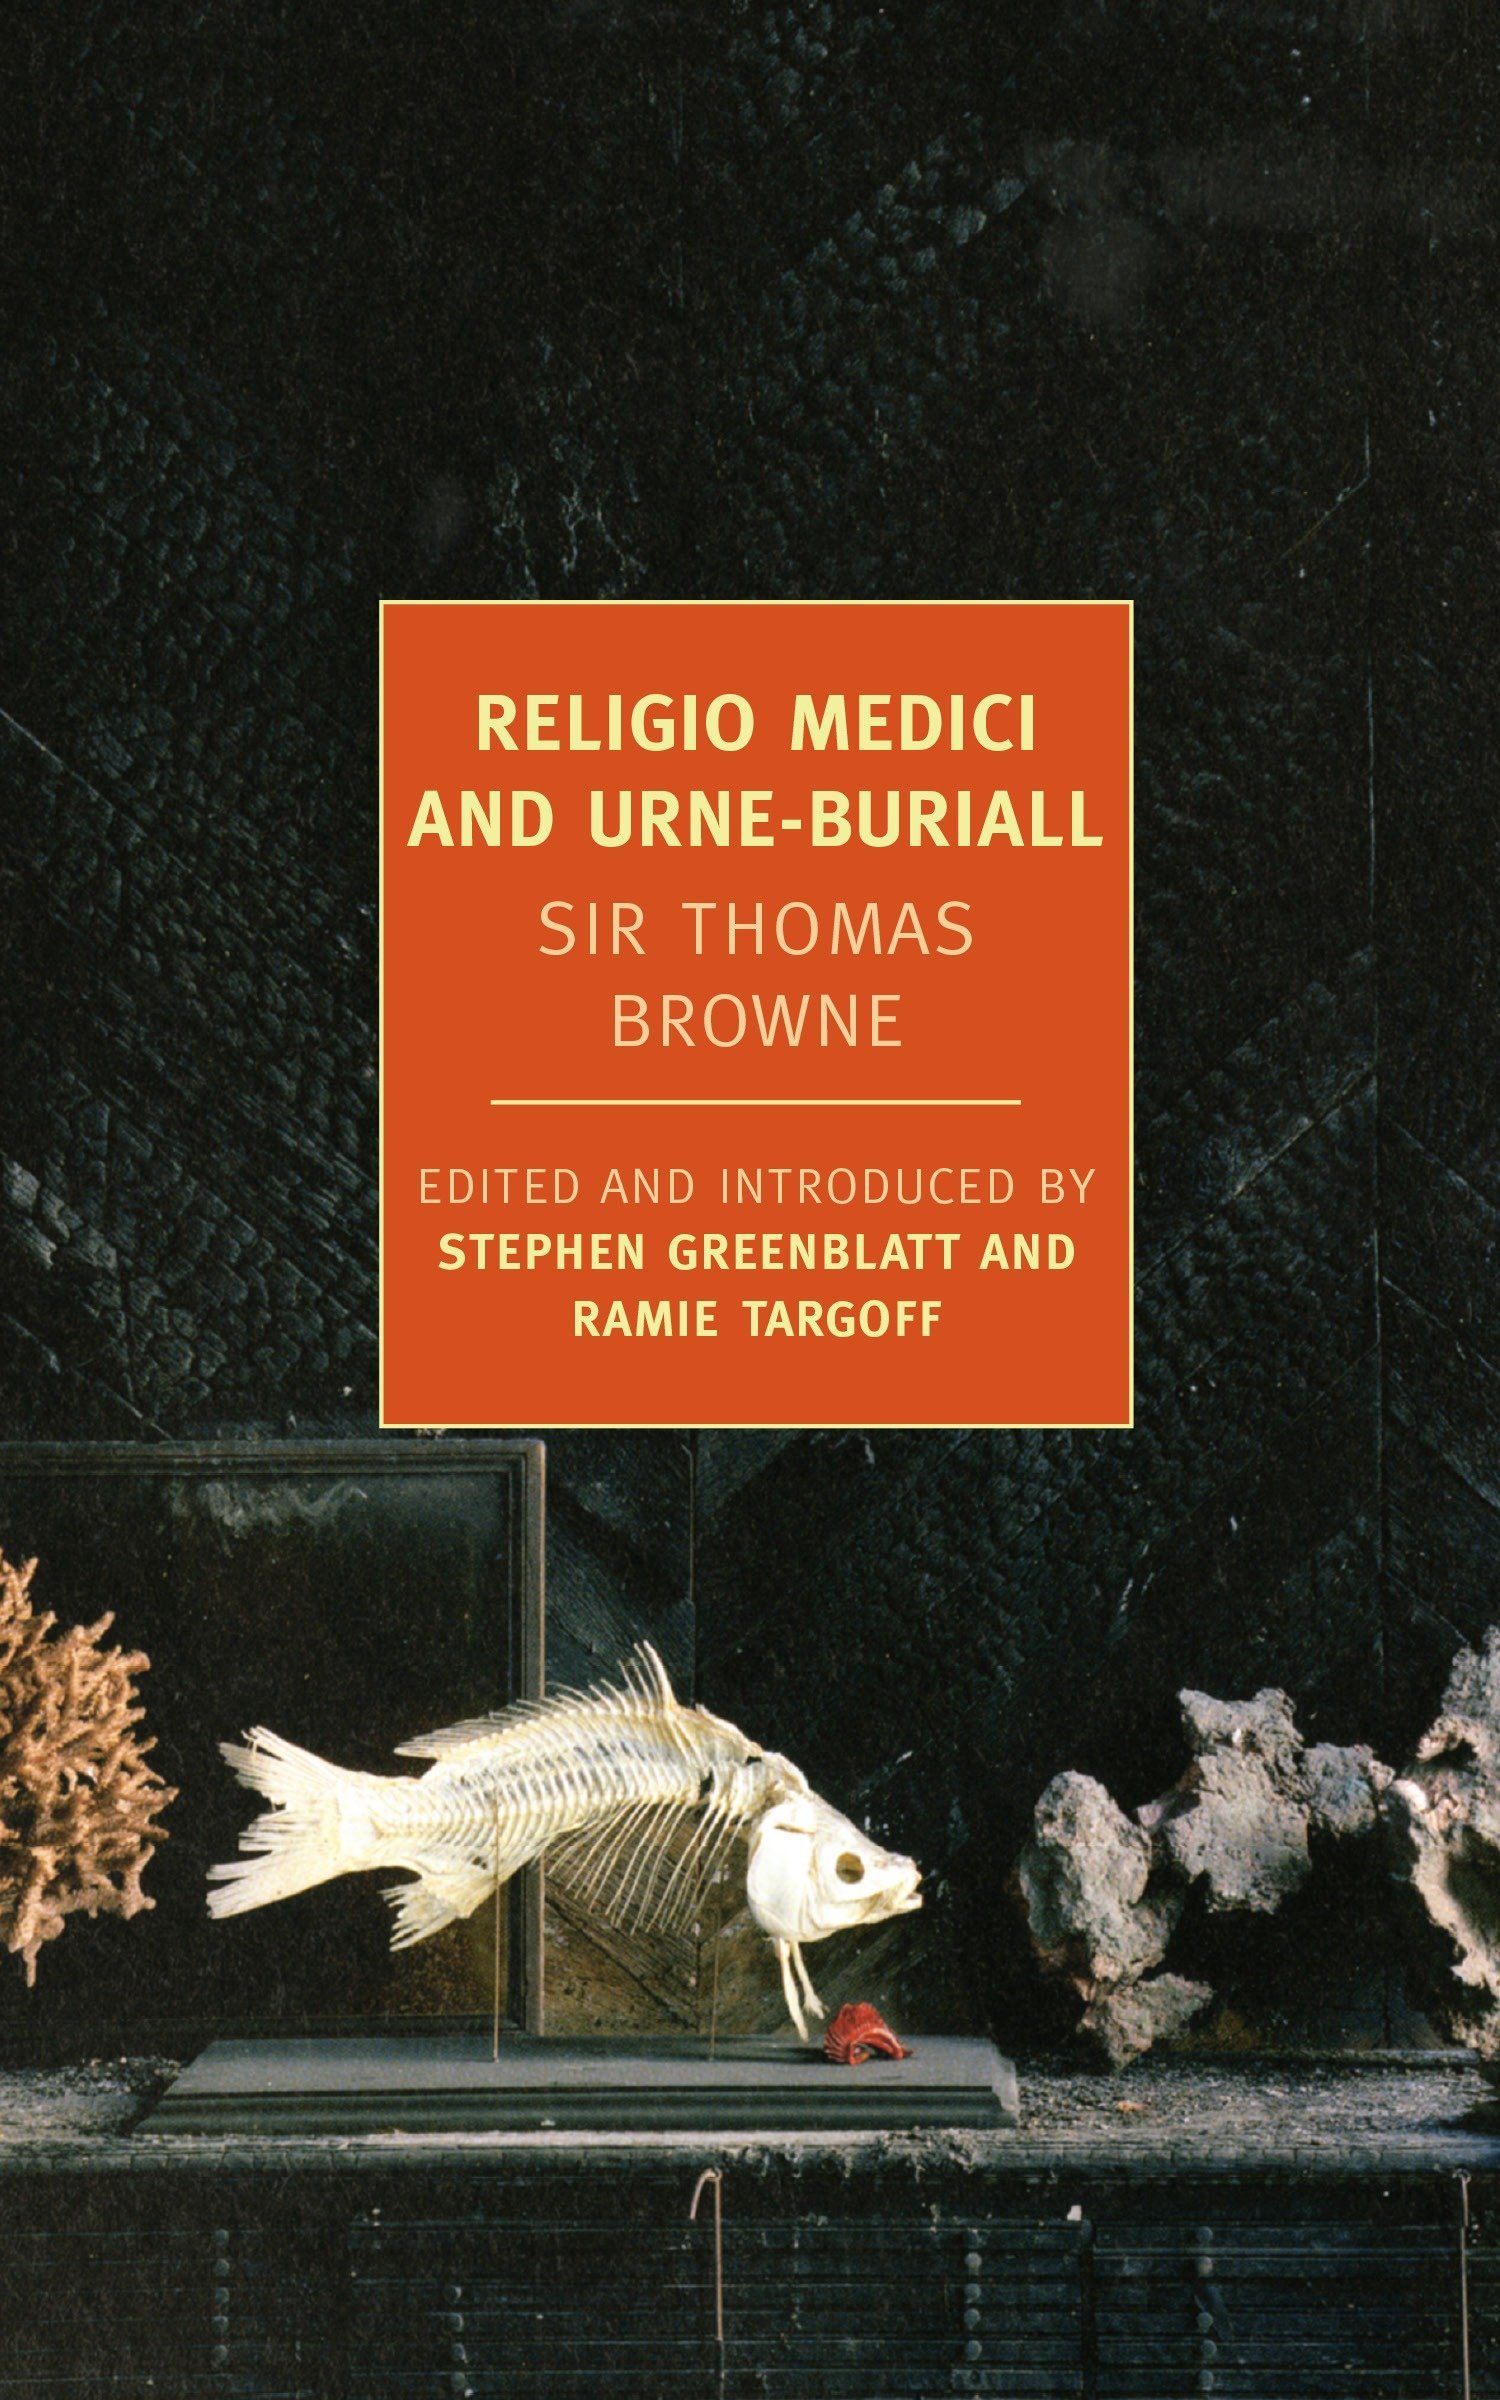 Coperta cărții: Religio Medici And Urne-Buriall - lonnieyoungblood.com